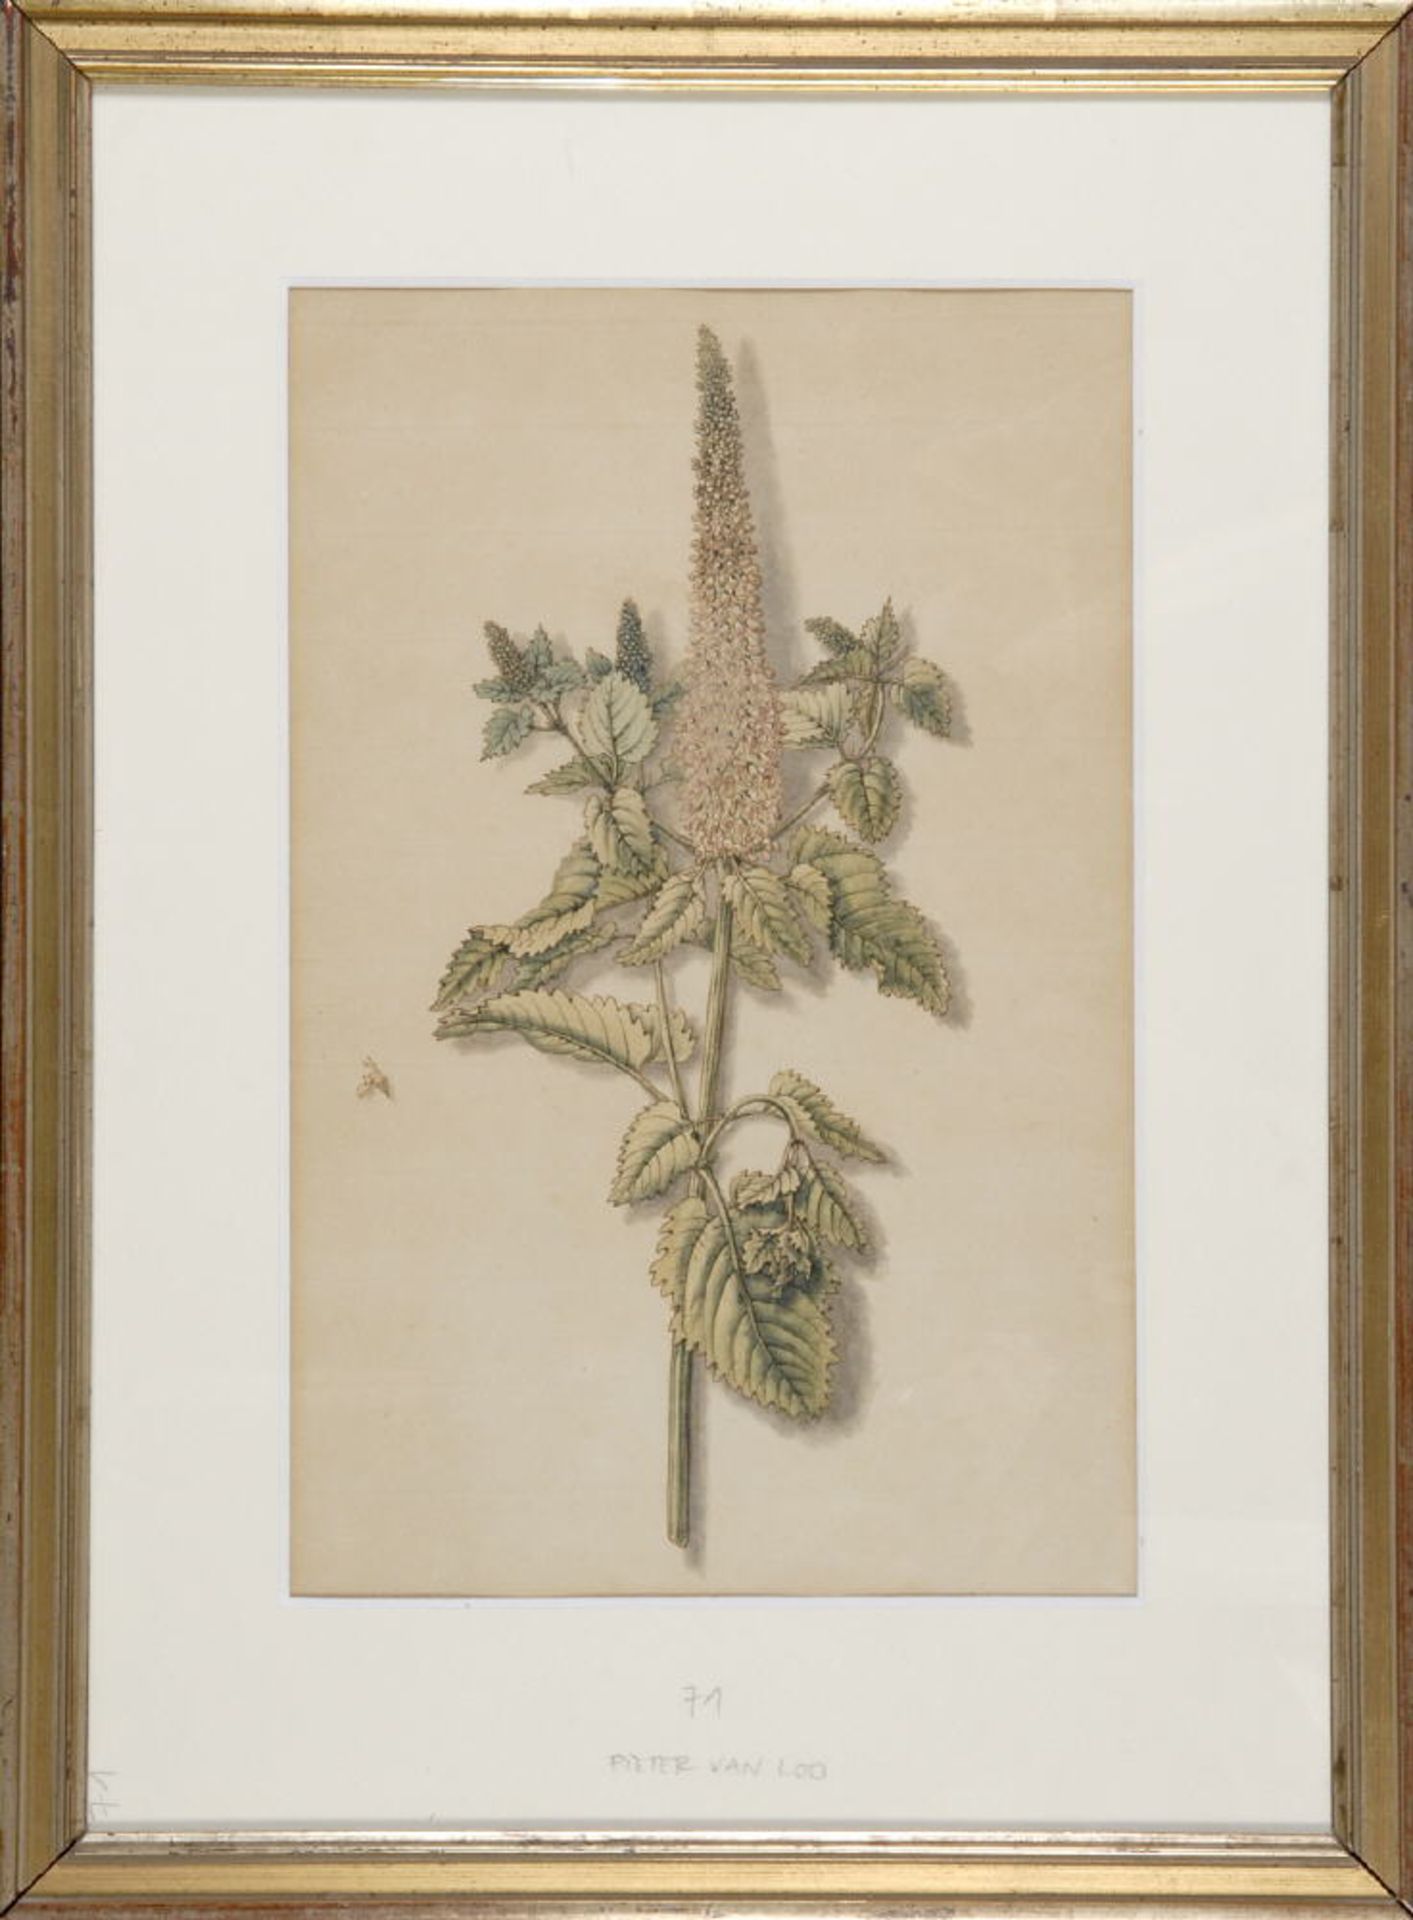 Blumenmaler des 18./19. Jh.Aquarell, auf Bütten, 32 x 16 cm, " Pflanzendarstellung ", auf dem P bez.